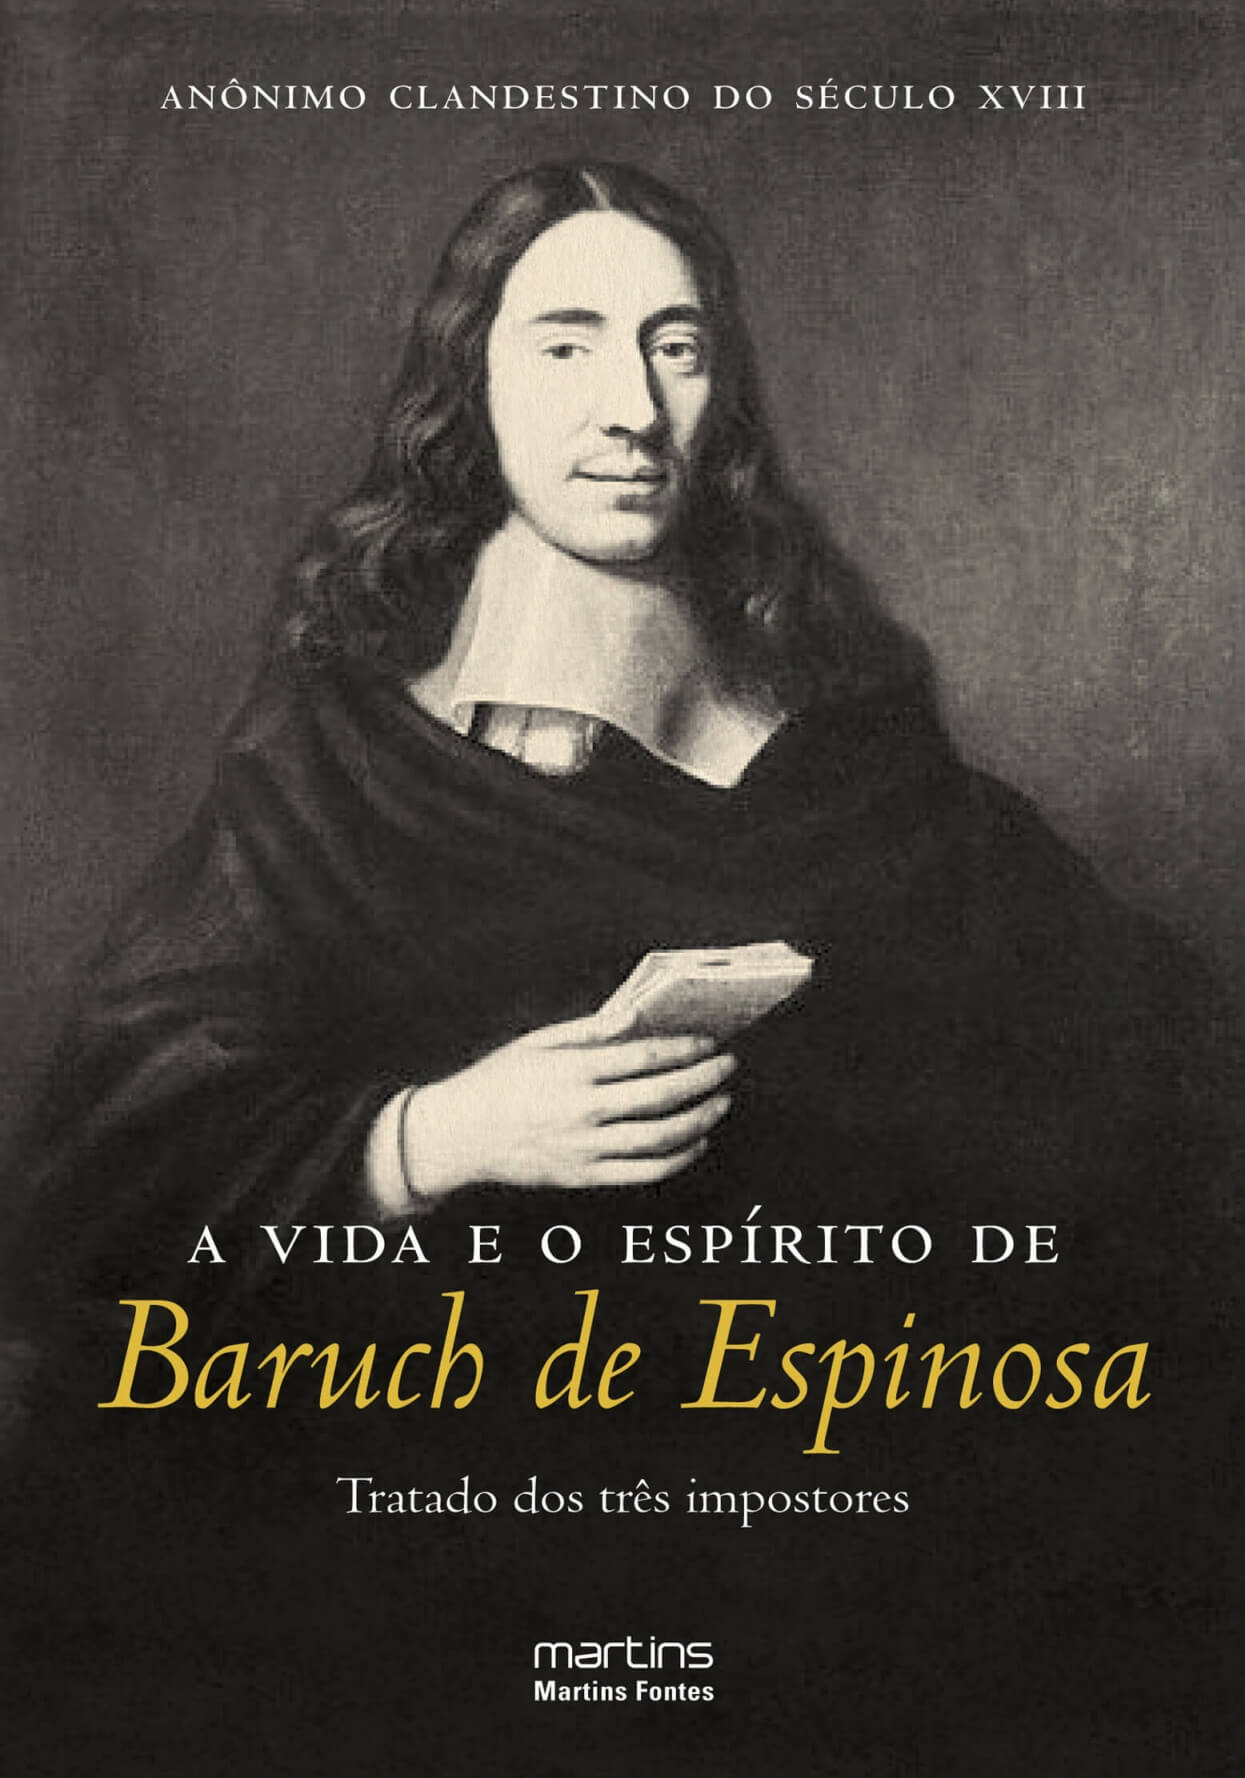 Vida e o espírito de Baruch de Espinosa, A - Tratado dos três impostores  - Martins Fontes